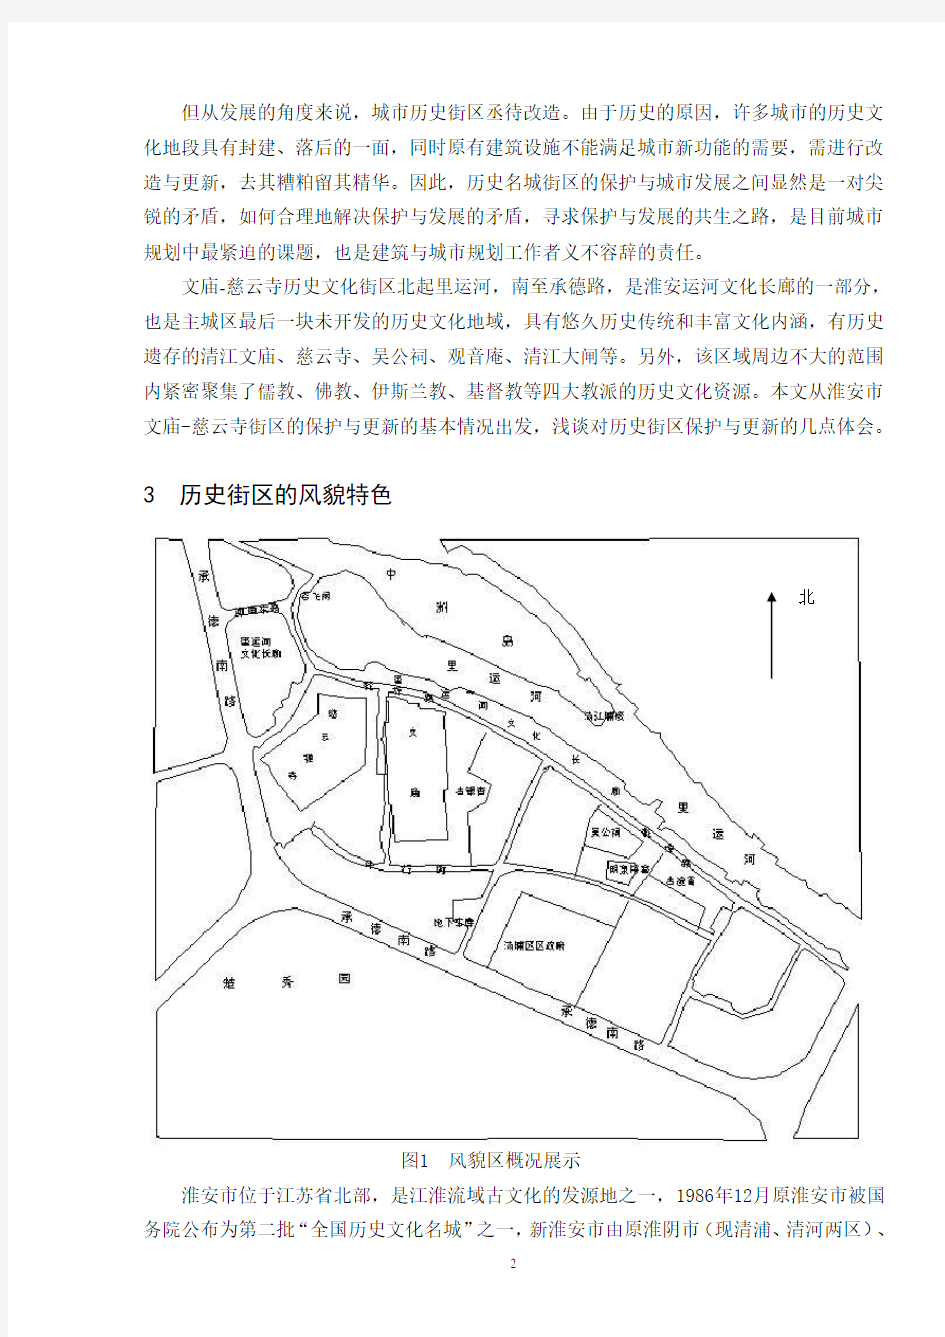 传统历史文化街区的保护与更新以淮安文庙、慈云寺地区为例